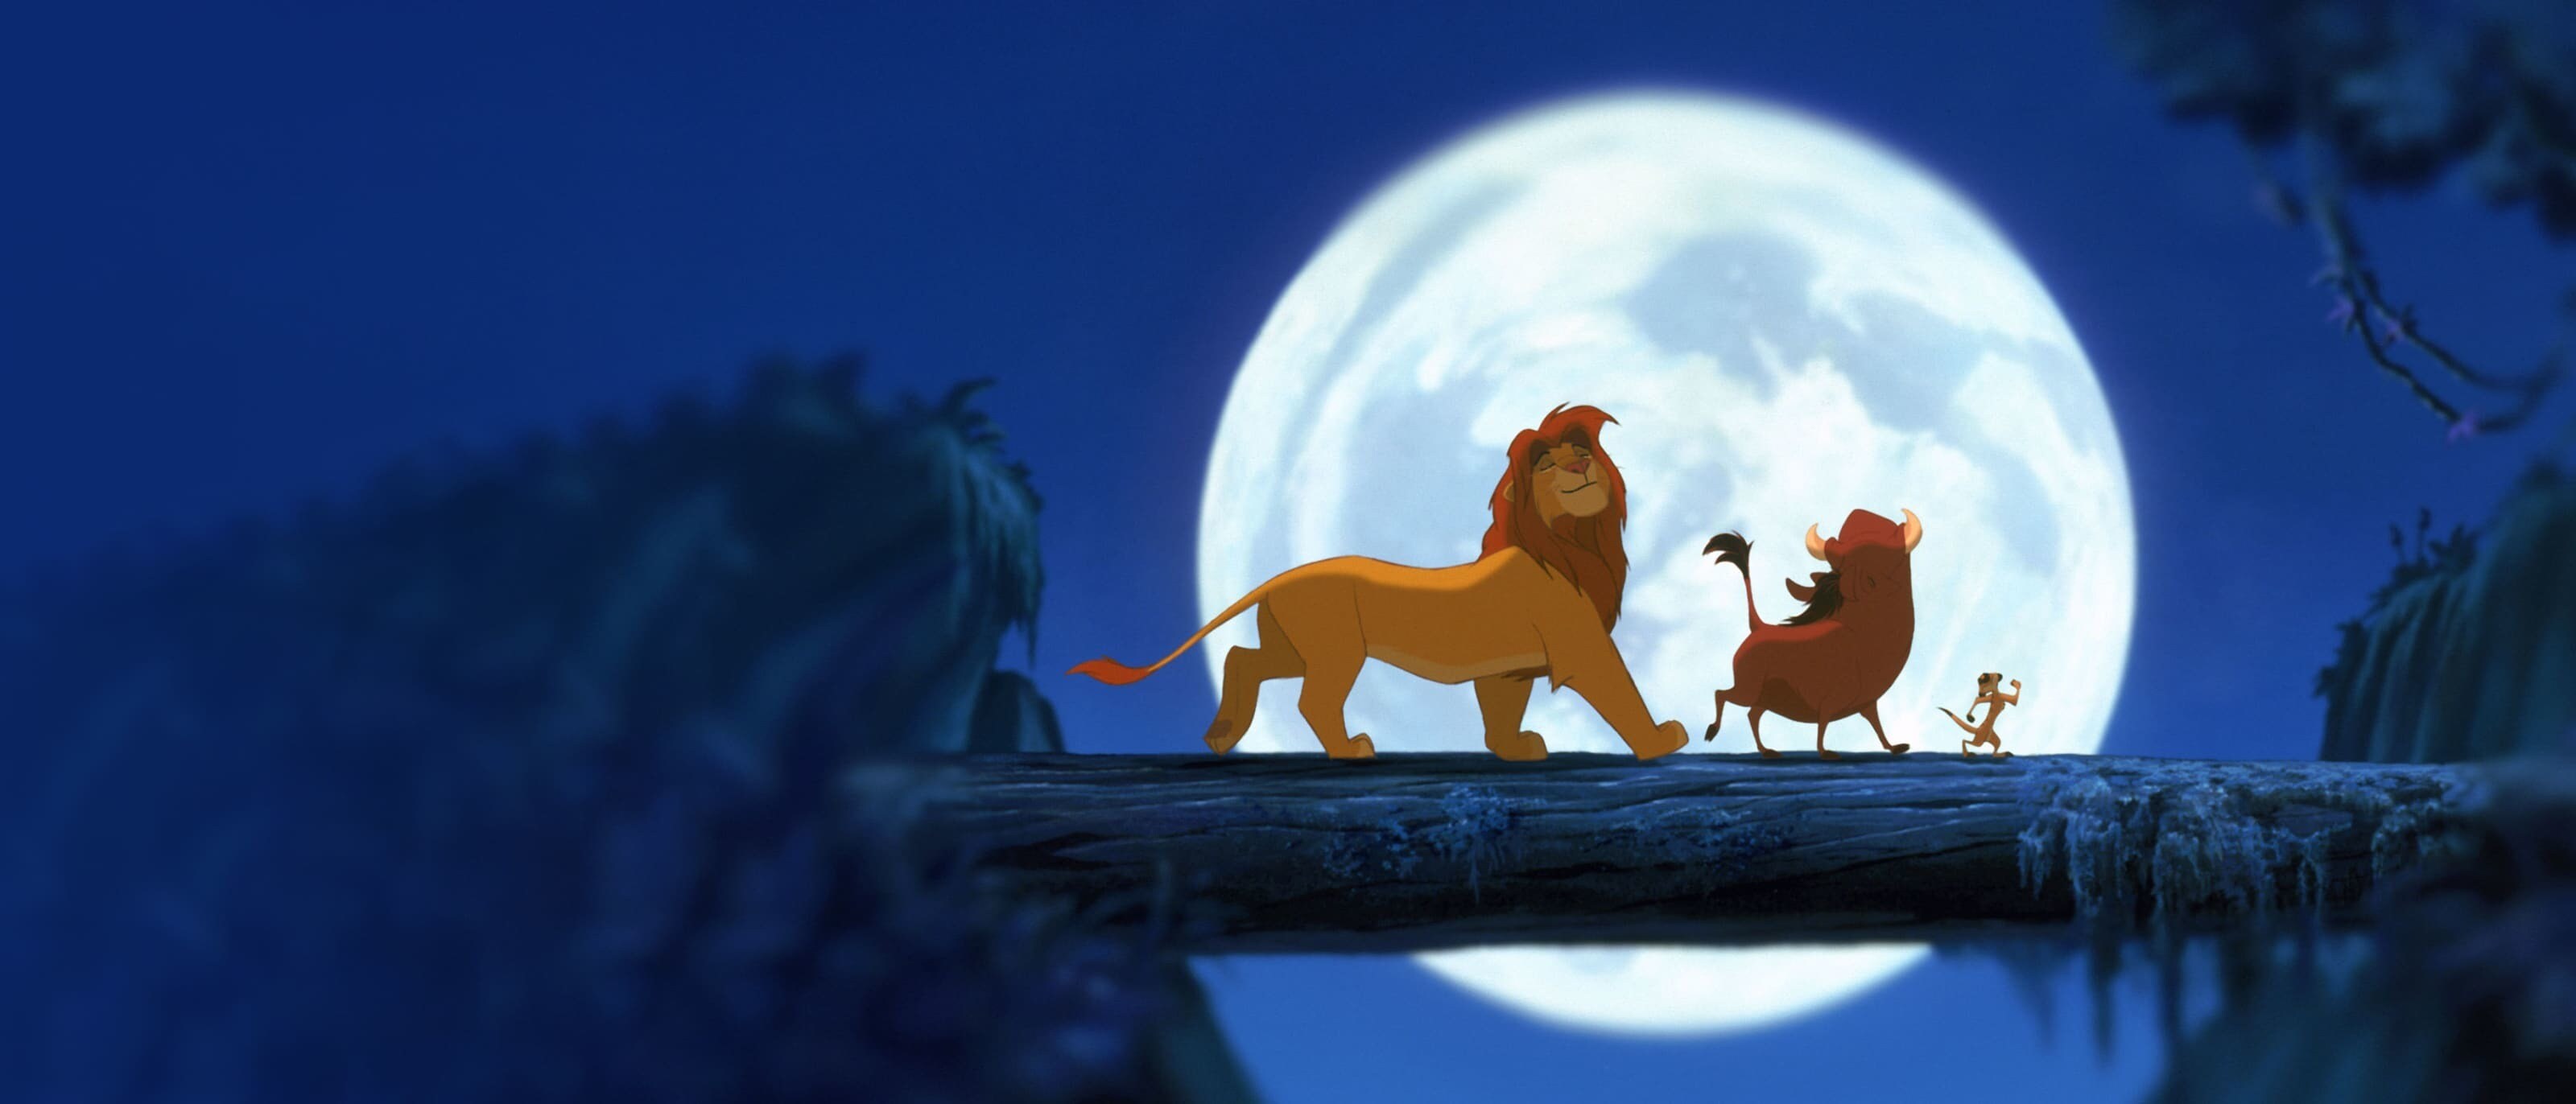 Disney Channel Lieblingsfilme - Der König der Löwen Gewinnspiel